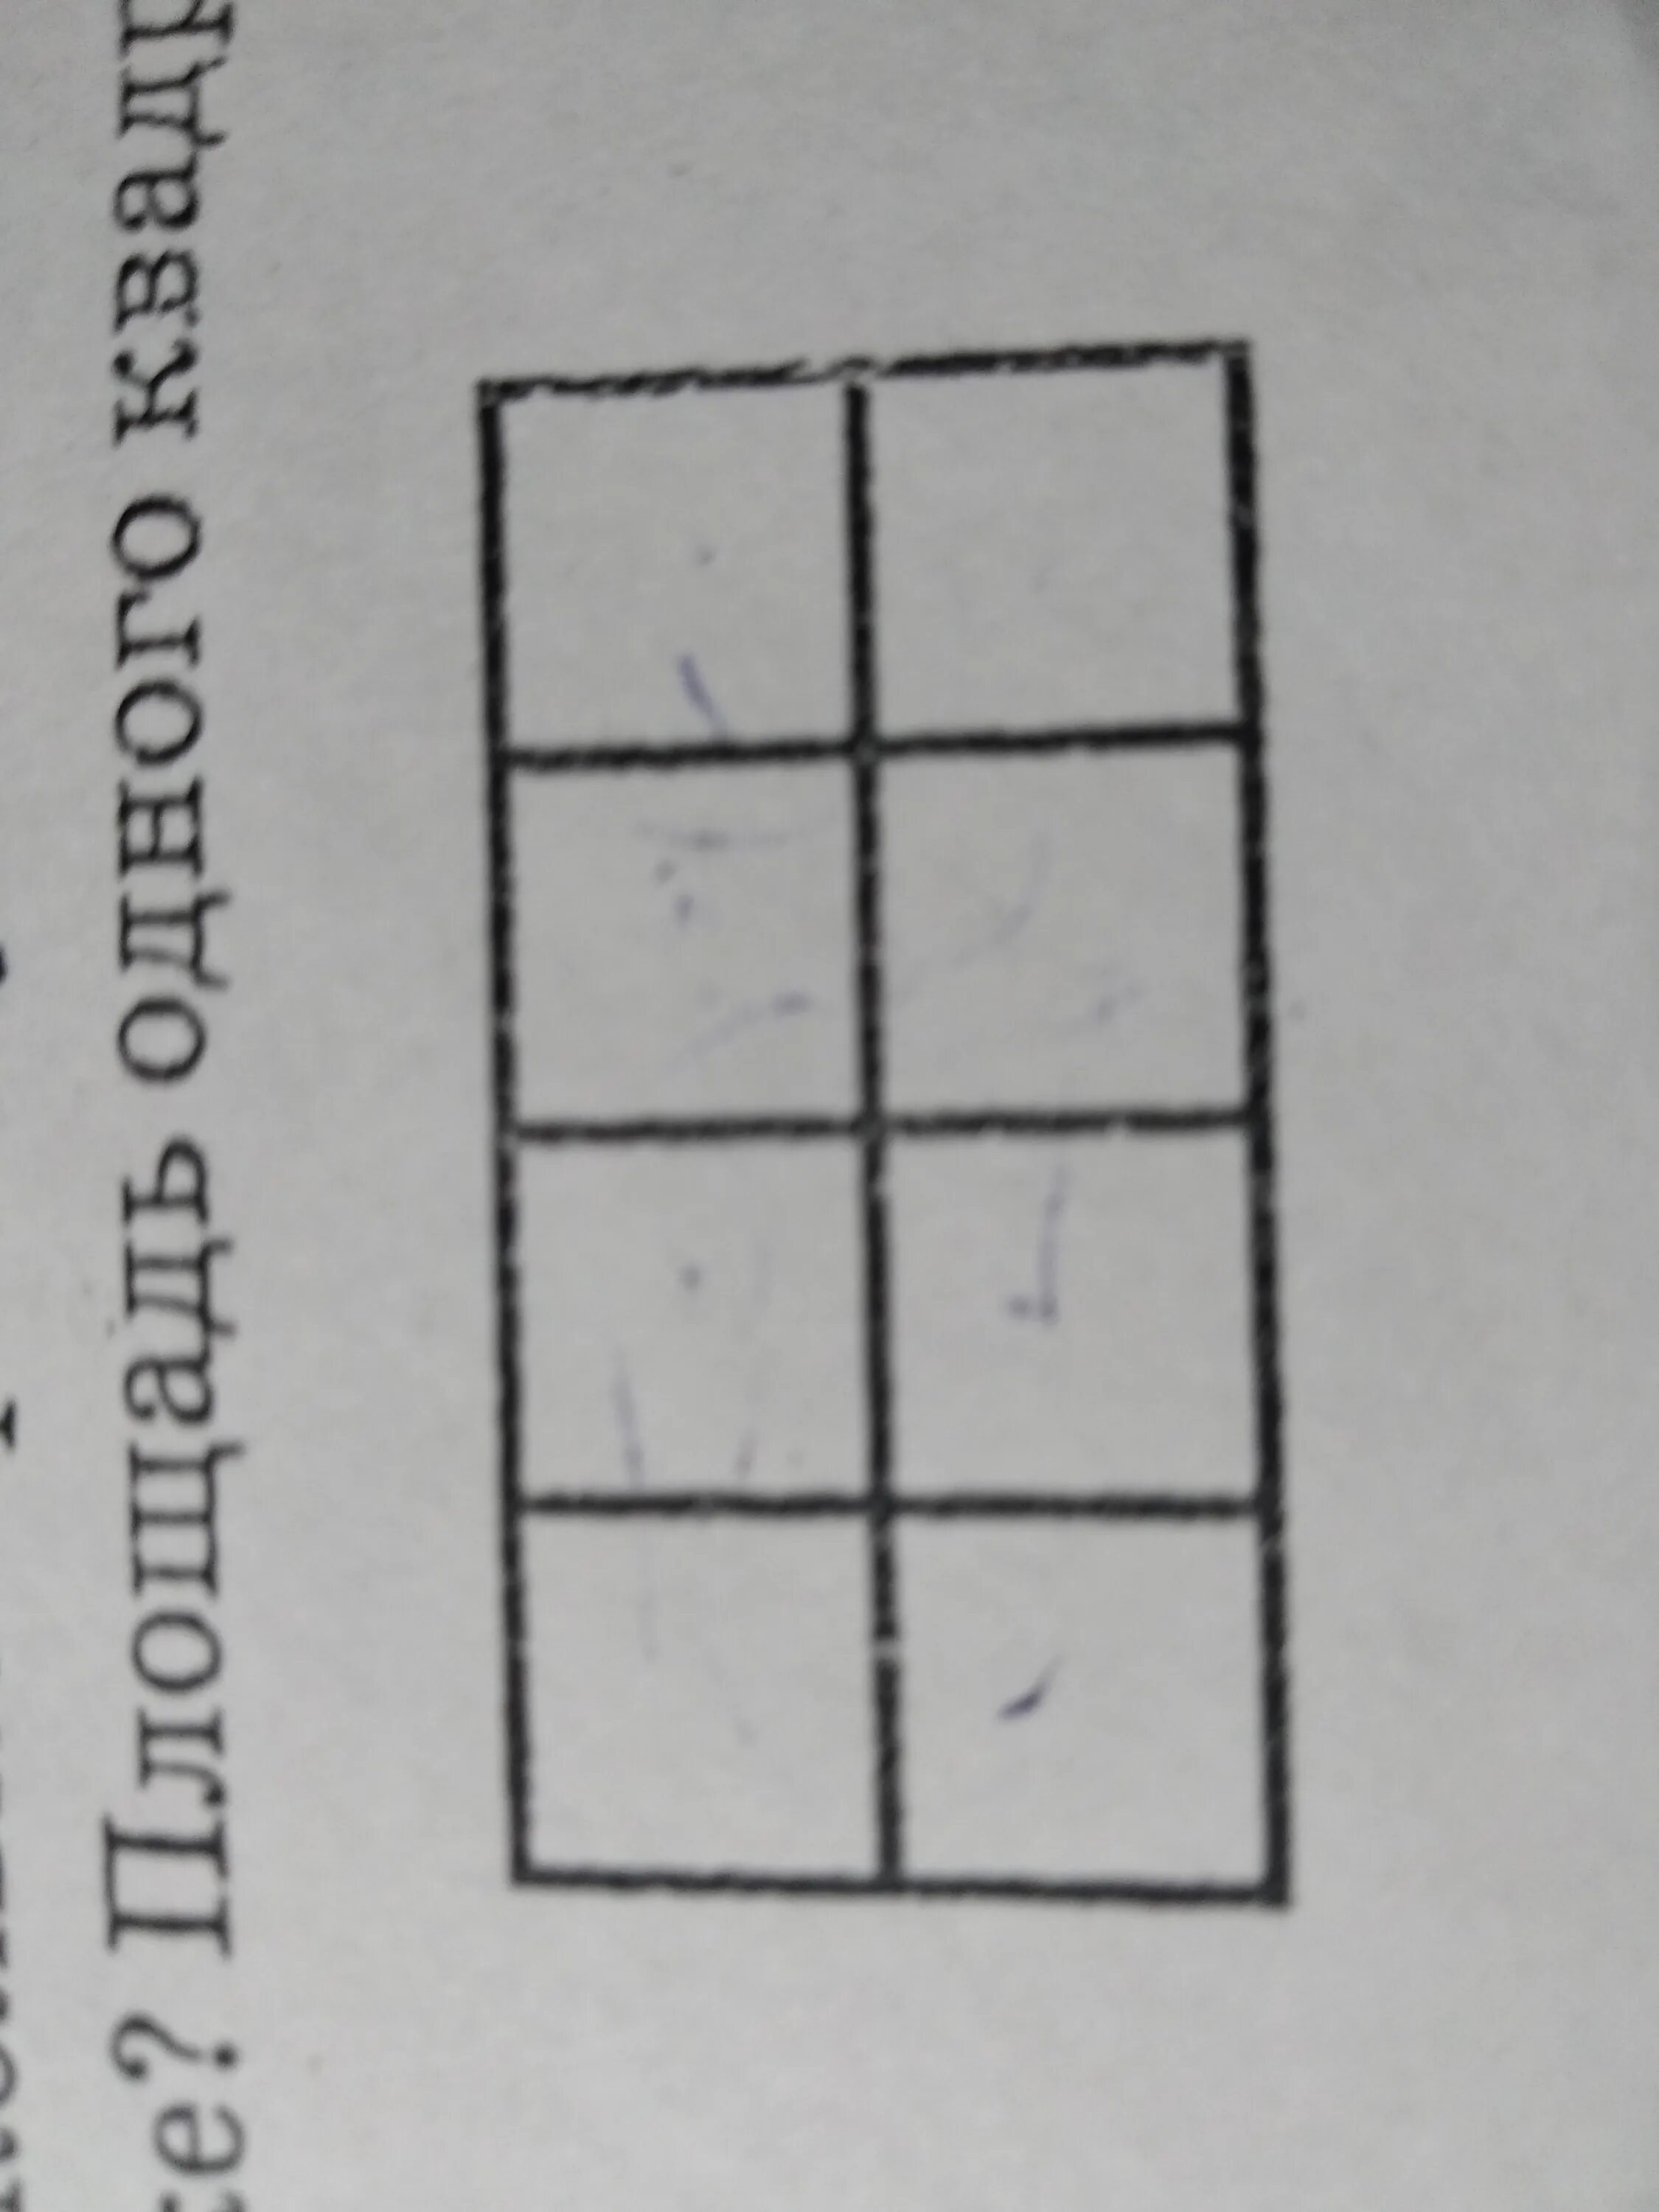 Сколько различных прямоугольников на рисунке. Сколько прямоугольников изображено. Сколько квадратов изображено на рисунке. Сколько квадратов и прямоугольников на картинке. Сколько прямоугольников на рисунке.